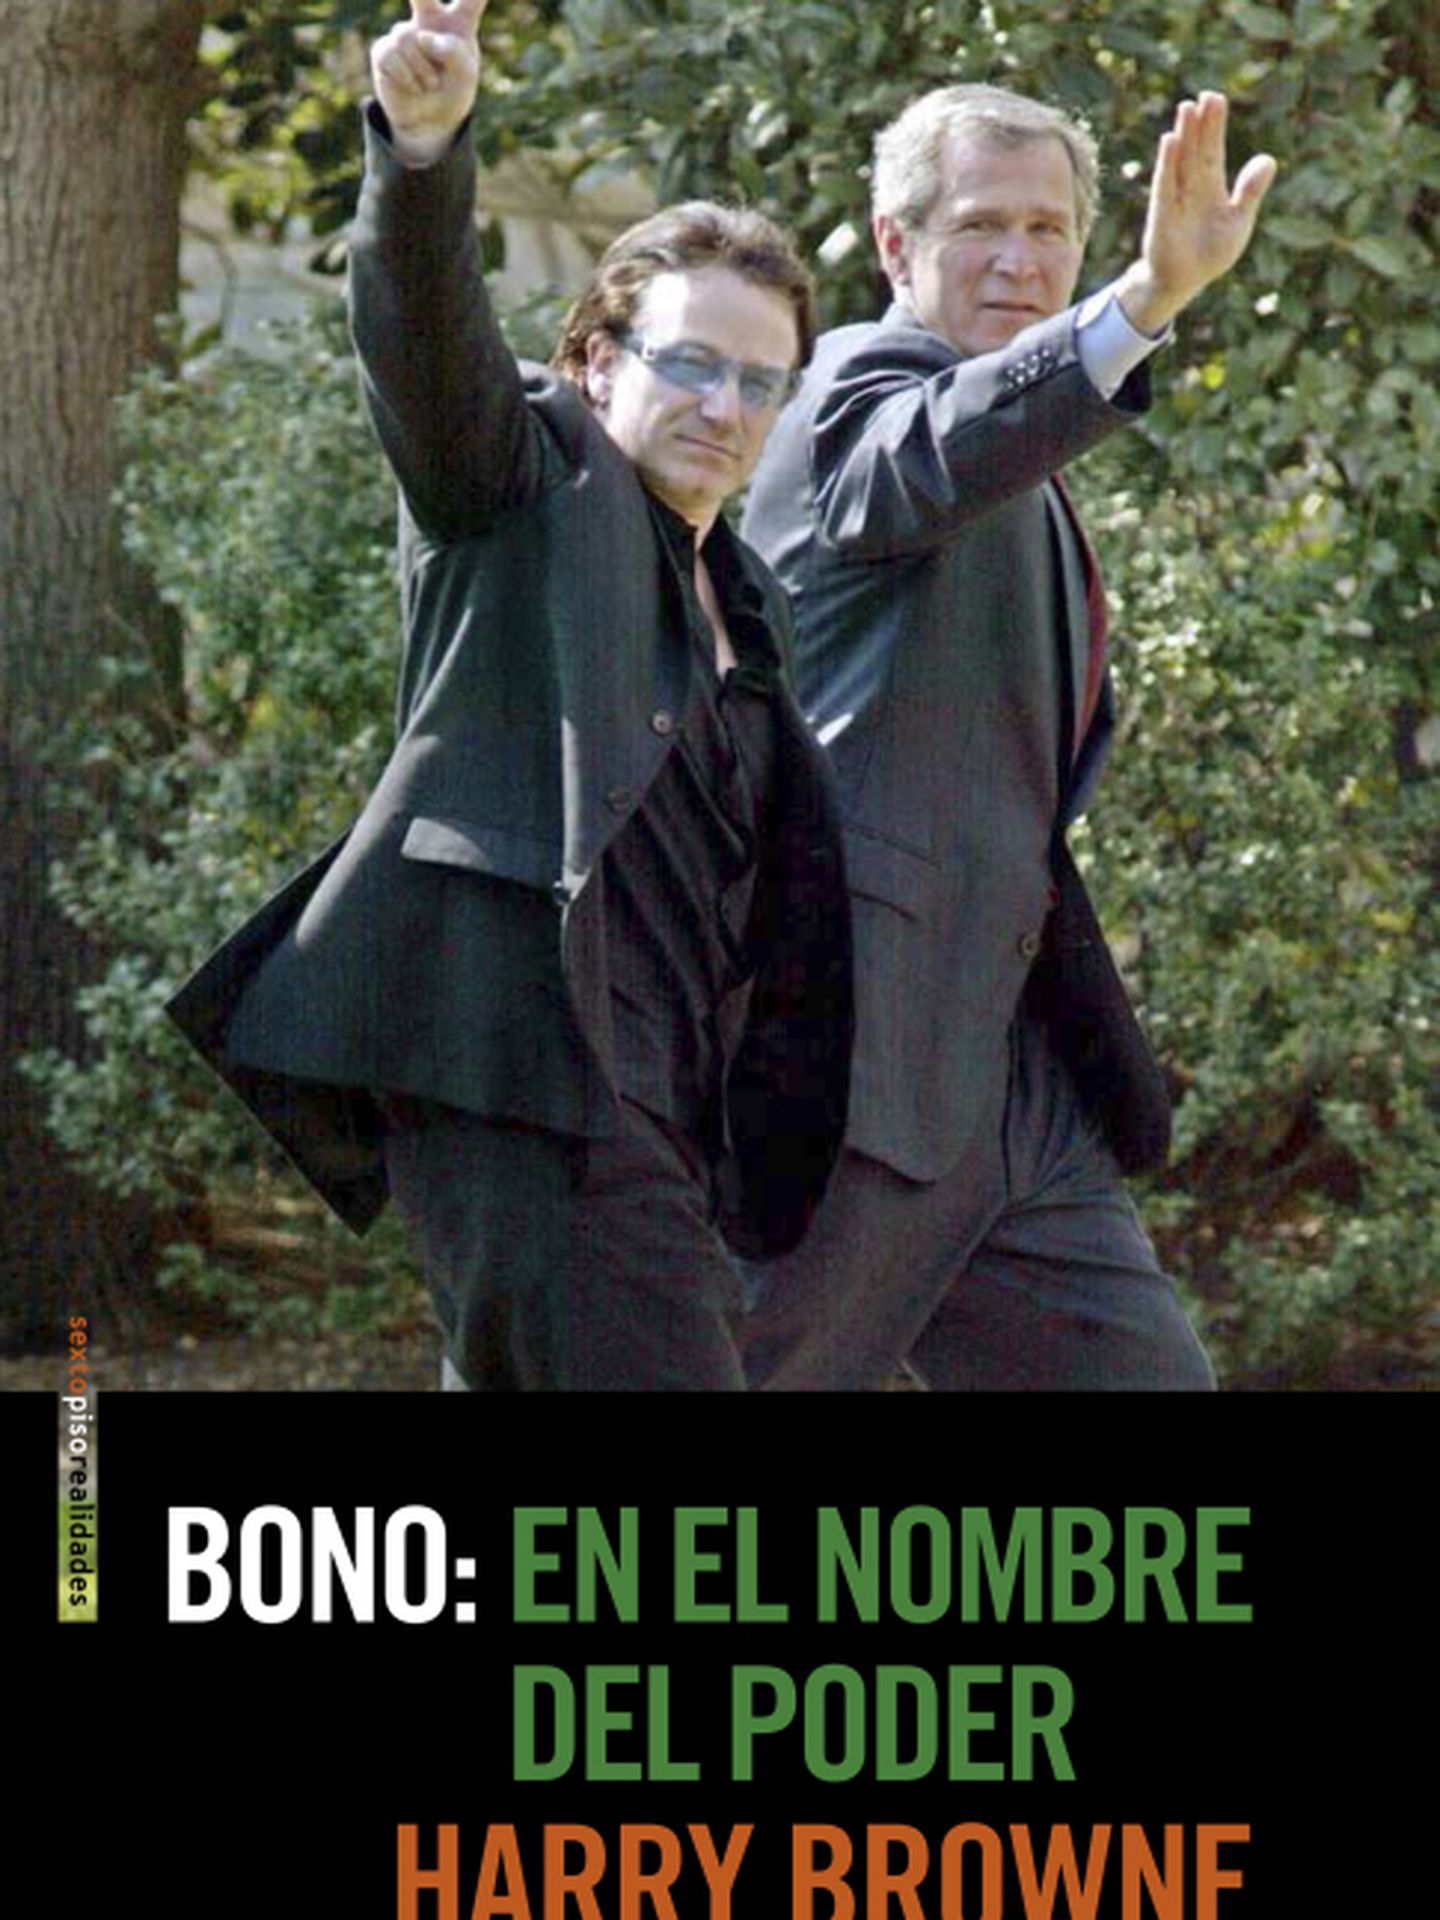 Portada del libro 'Bono: en el nombre del poder', de Harry Browne